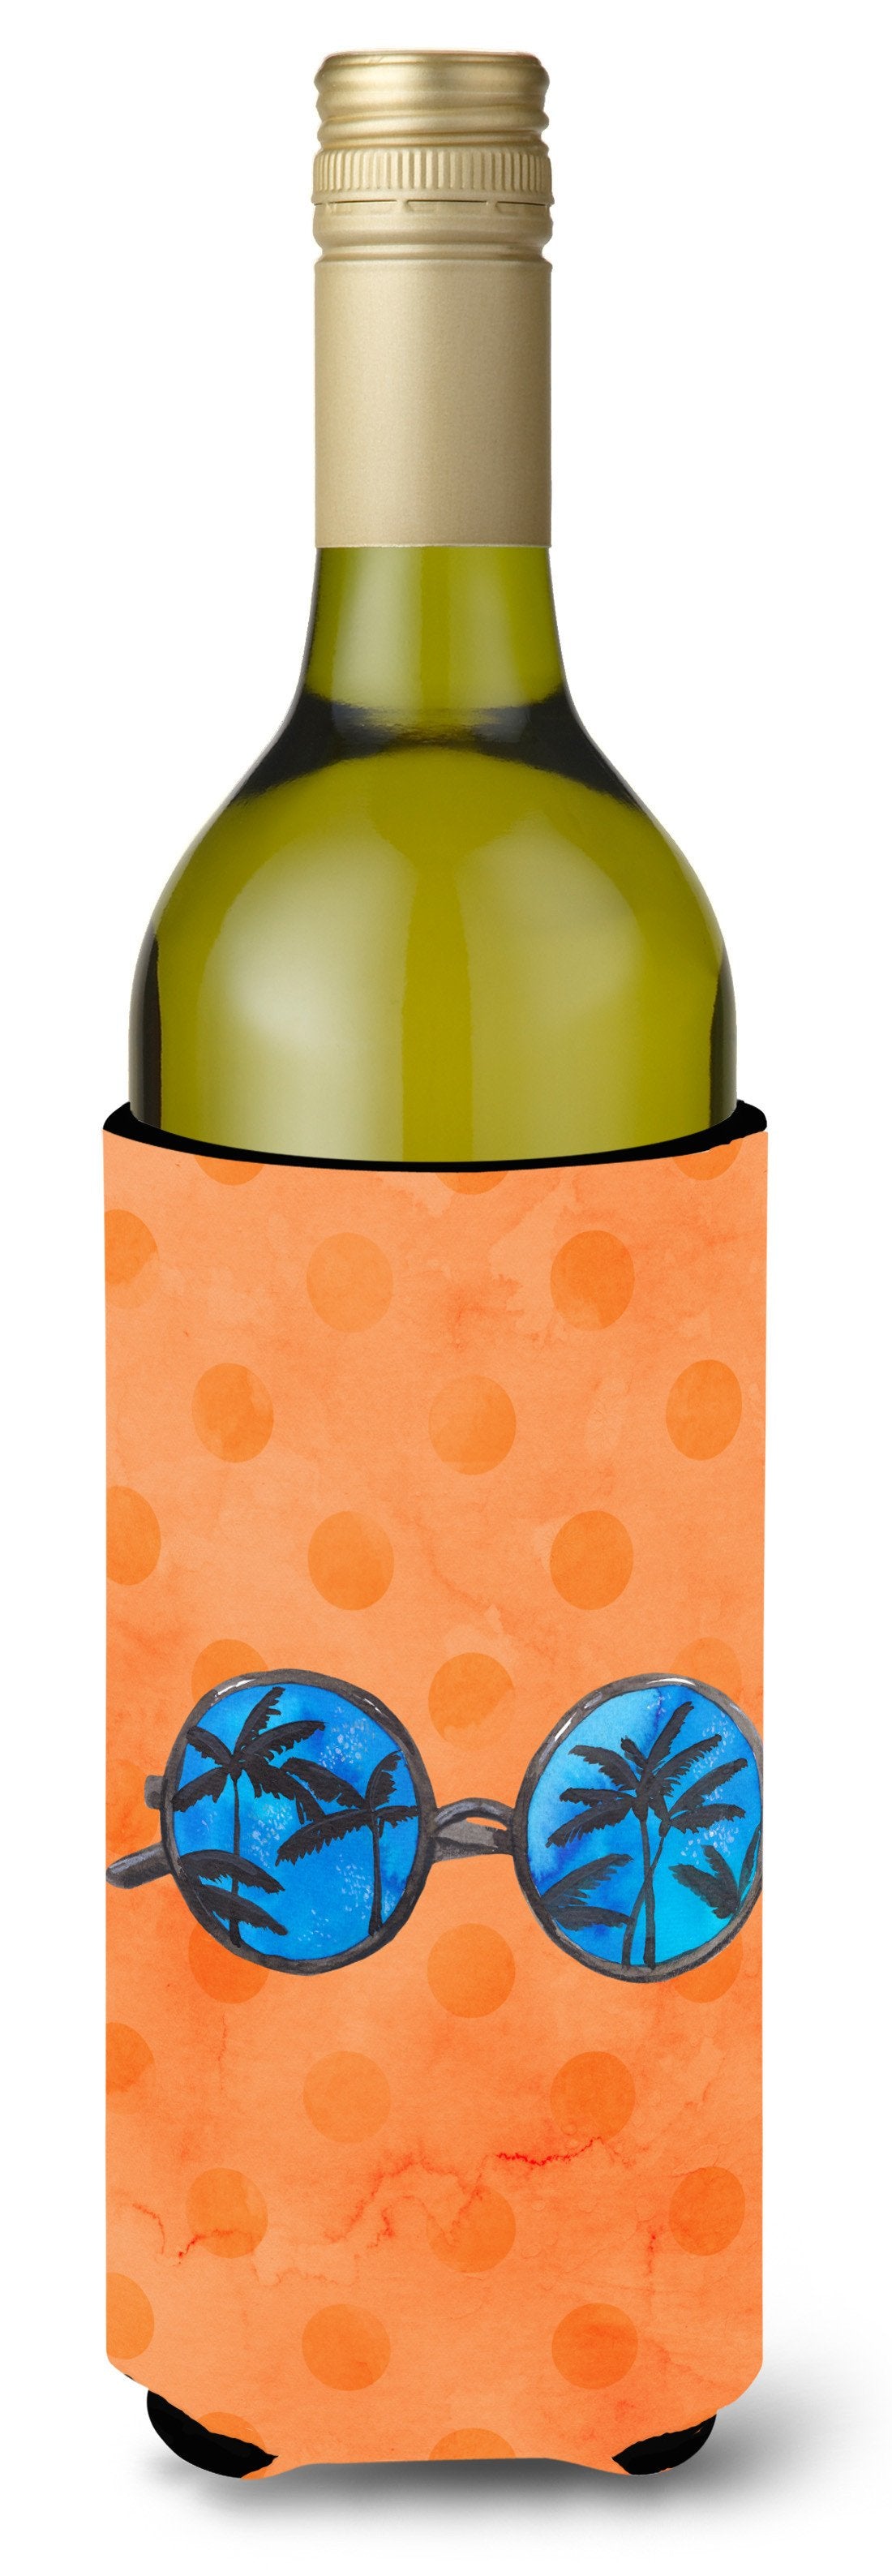 Sunglasses Orange Polkadot Wine Bottle Beverge Insulator Hugger BB8178LITERK by Caroline's Treasures